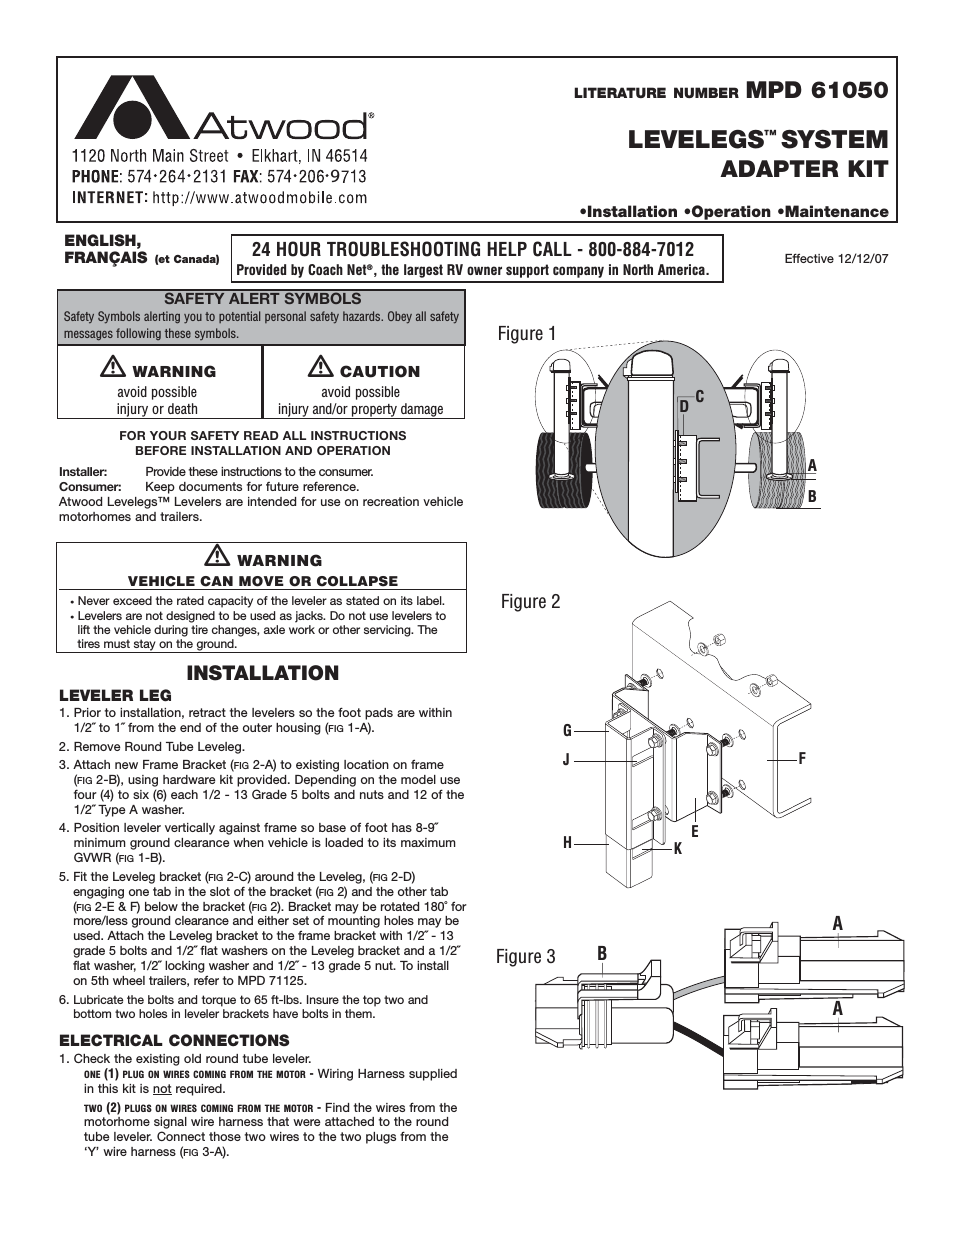 Levelegs System Adapter Kit